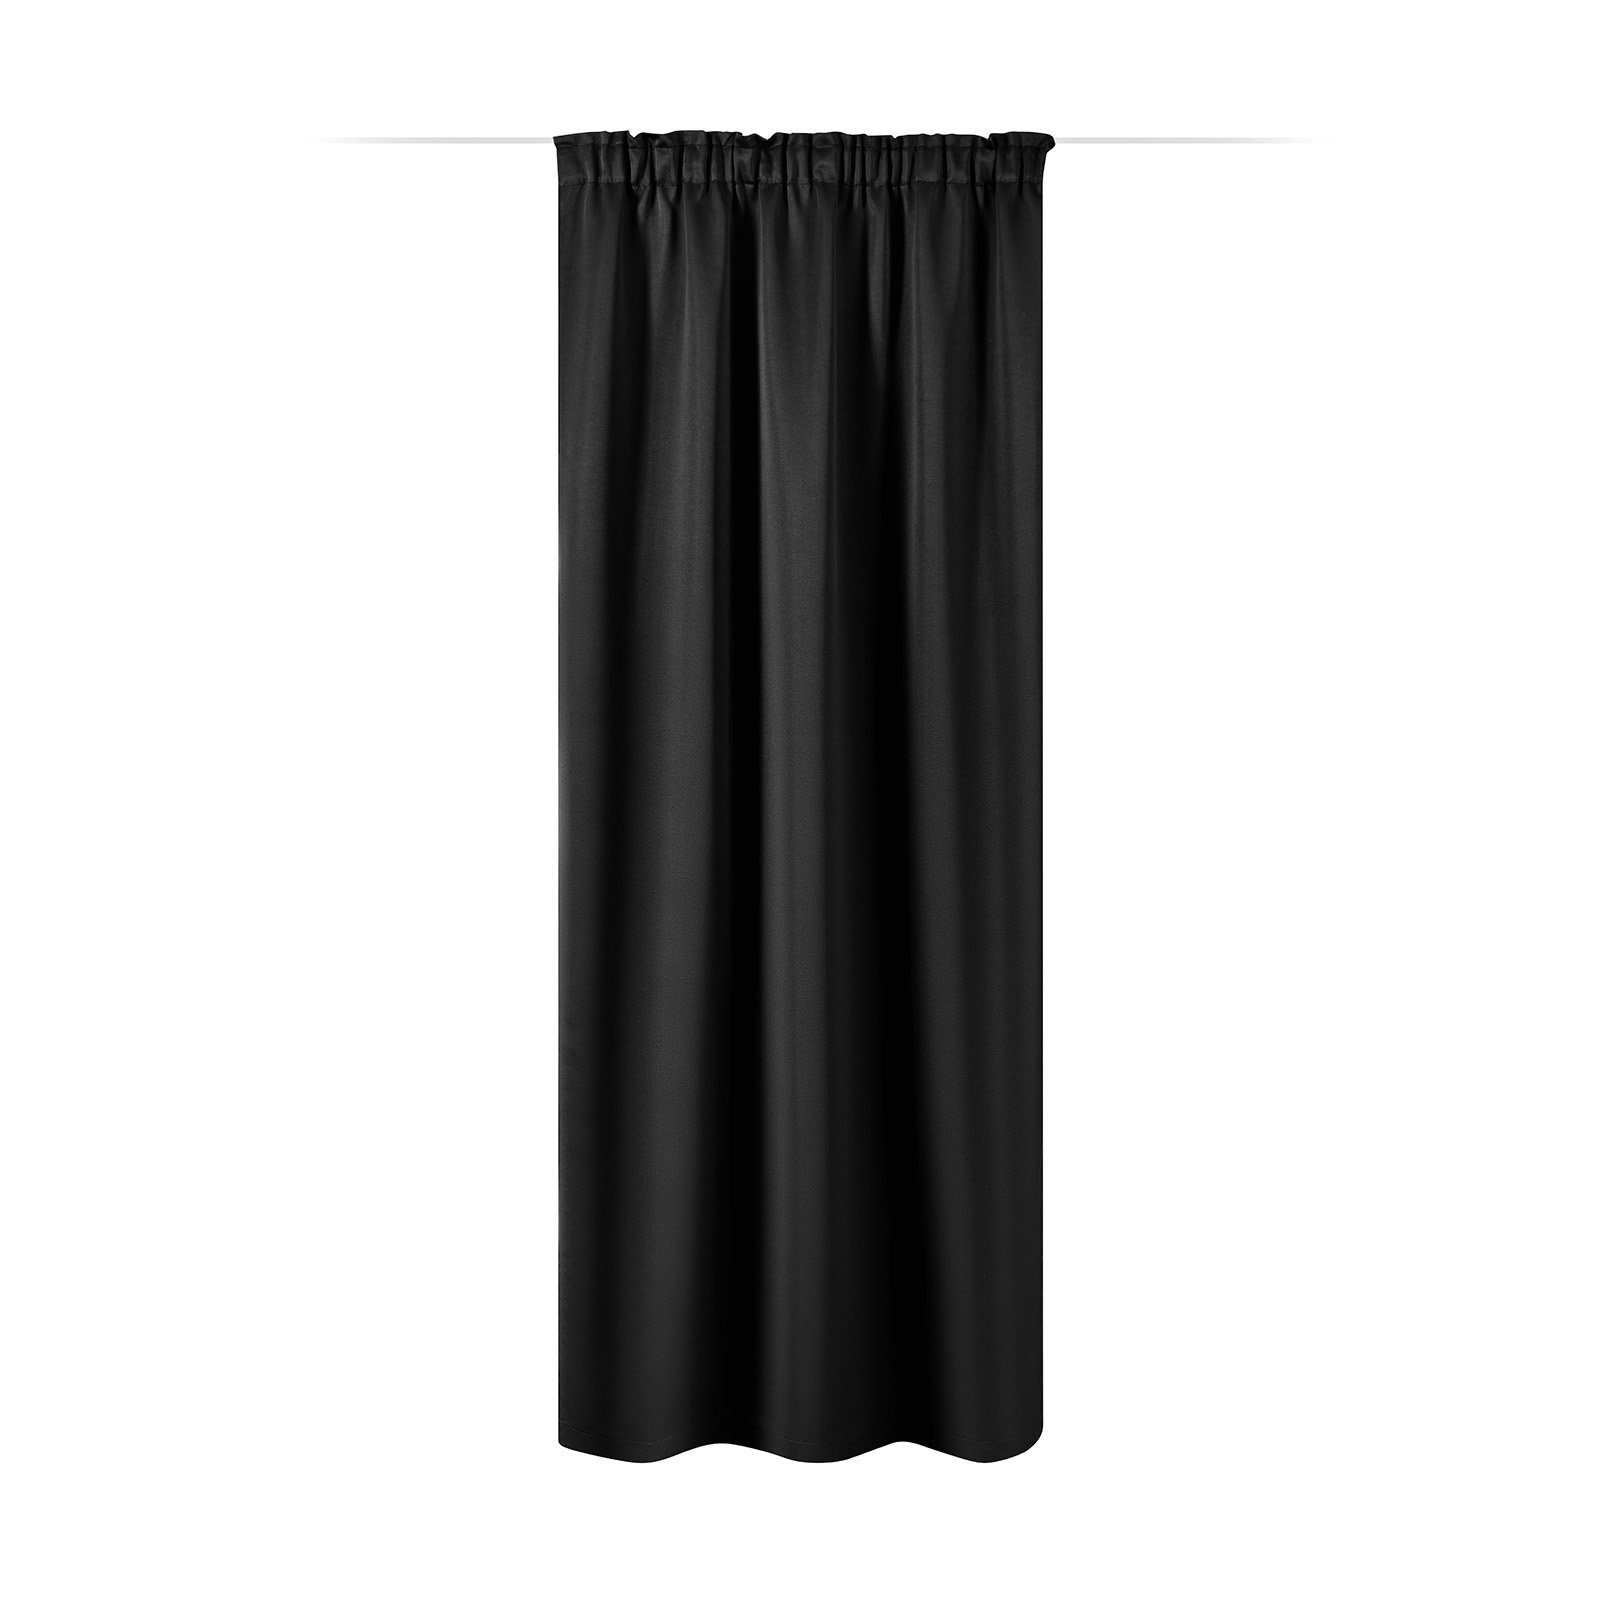 Vorhang Vorhang blickdicht, 140x245cm, Kräuselband, schwarz, JEMIDI